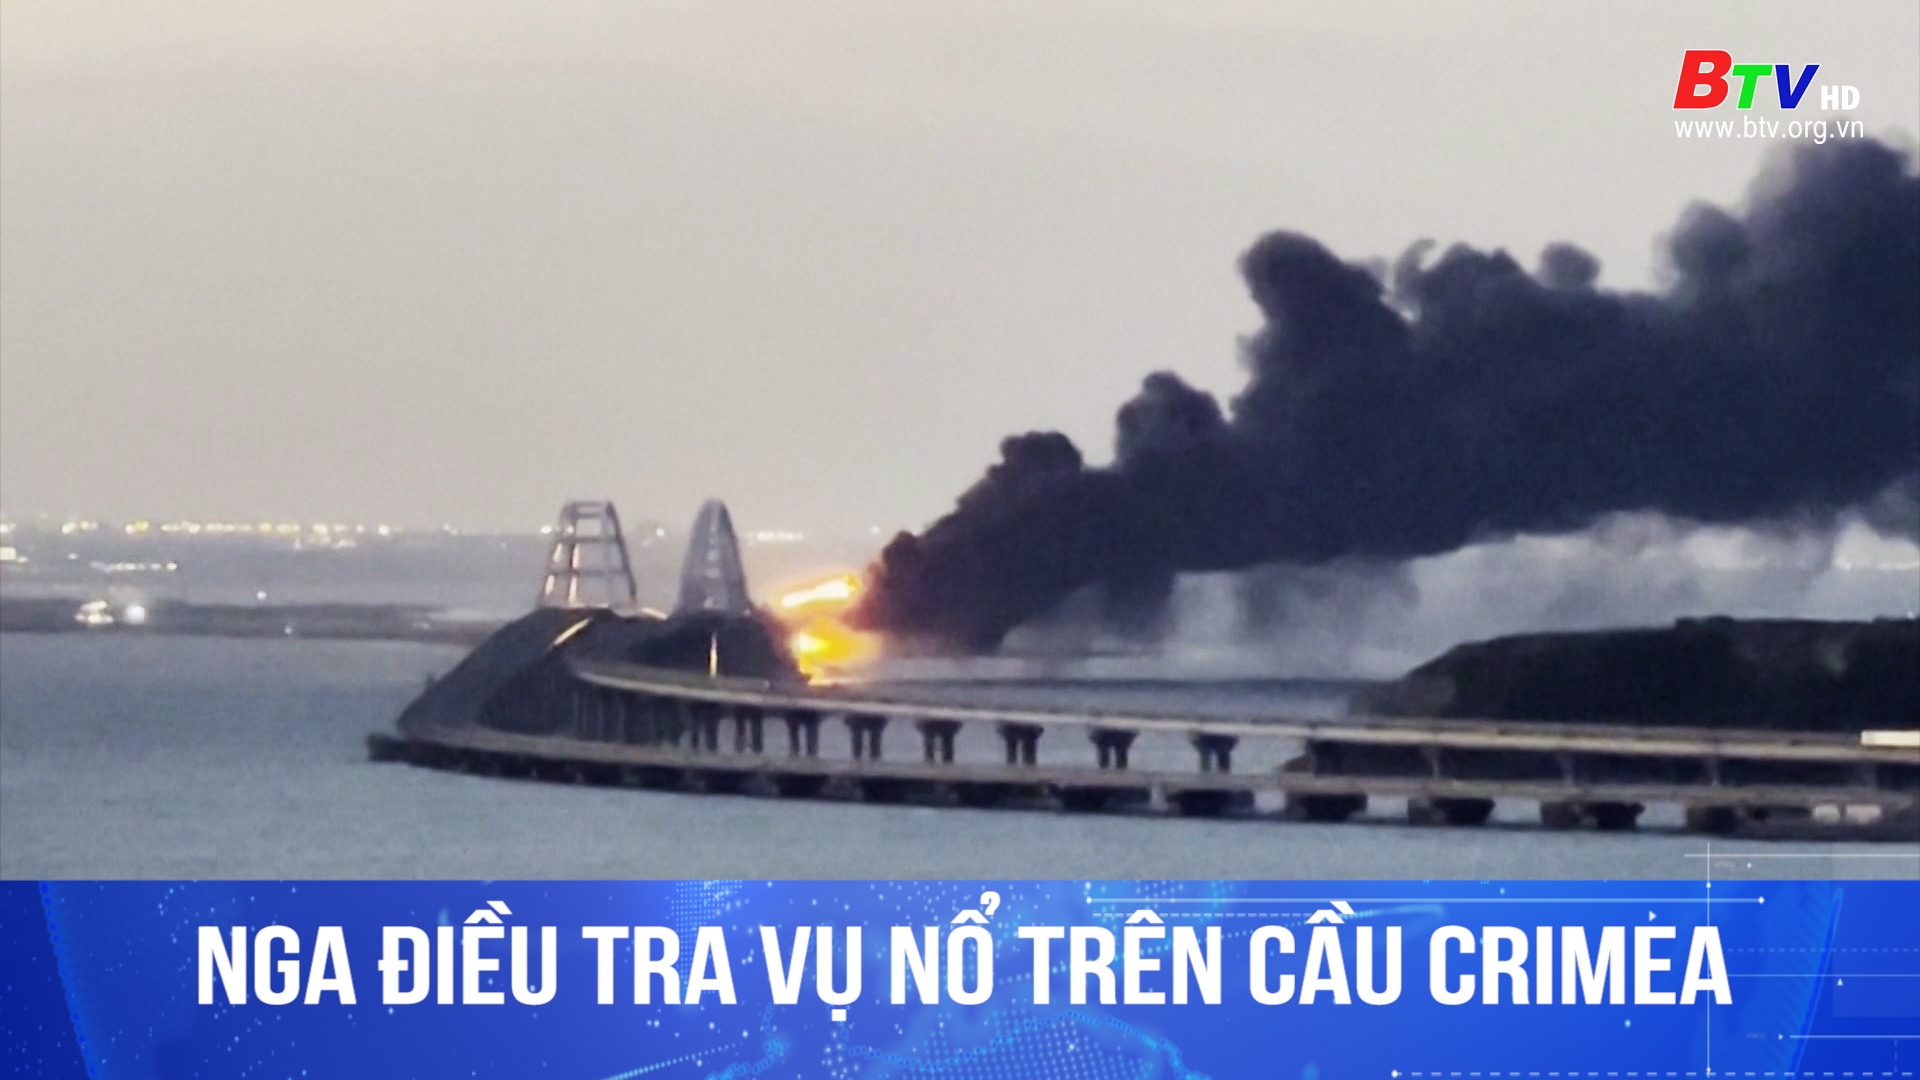 Nga điều tra vụ nổ trên cầu Crimea